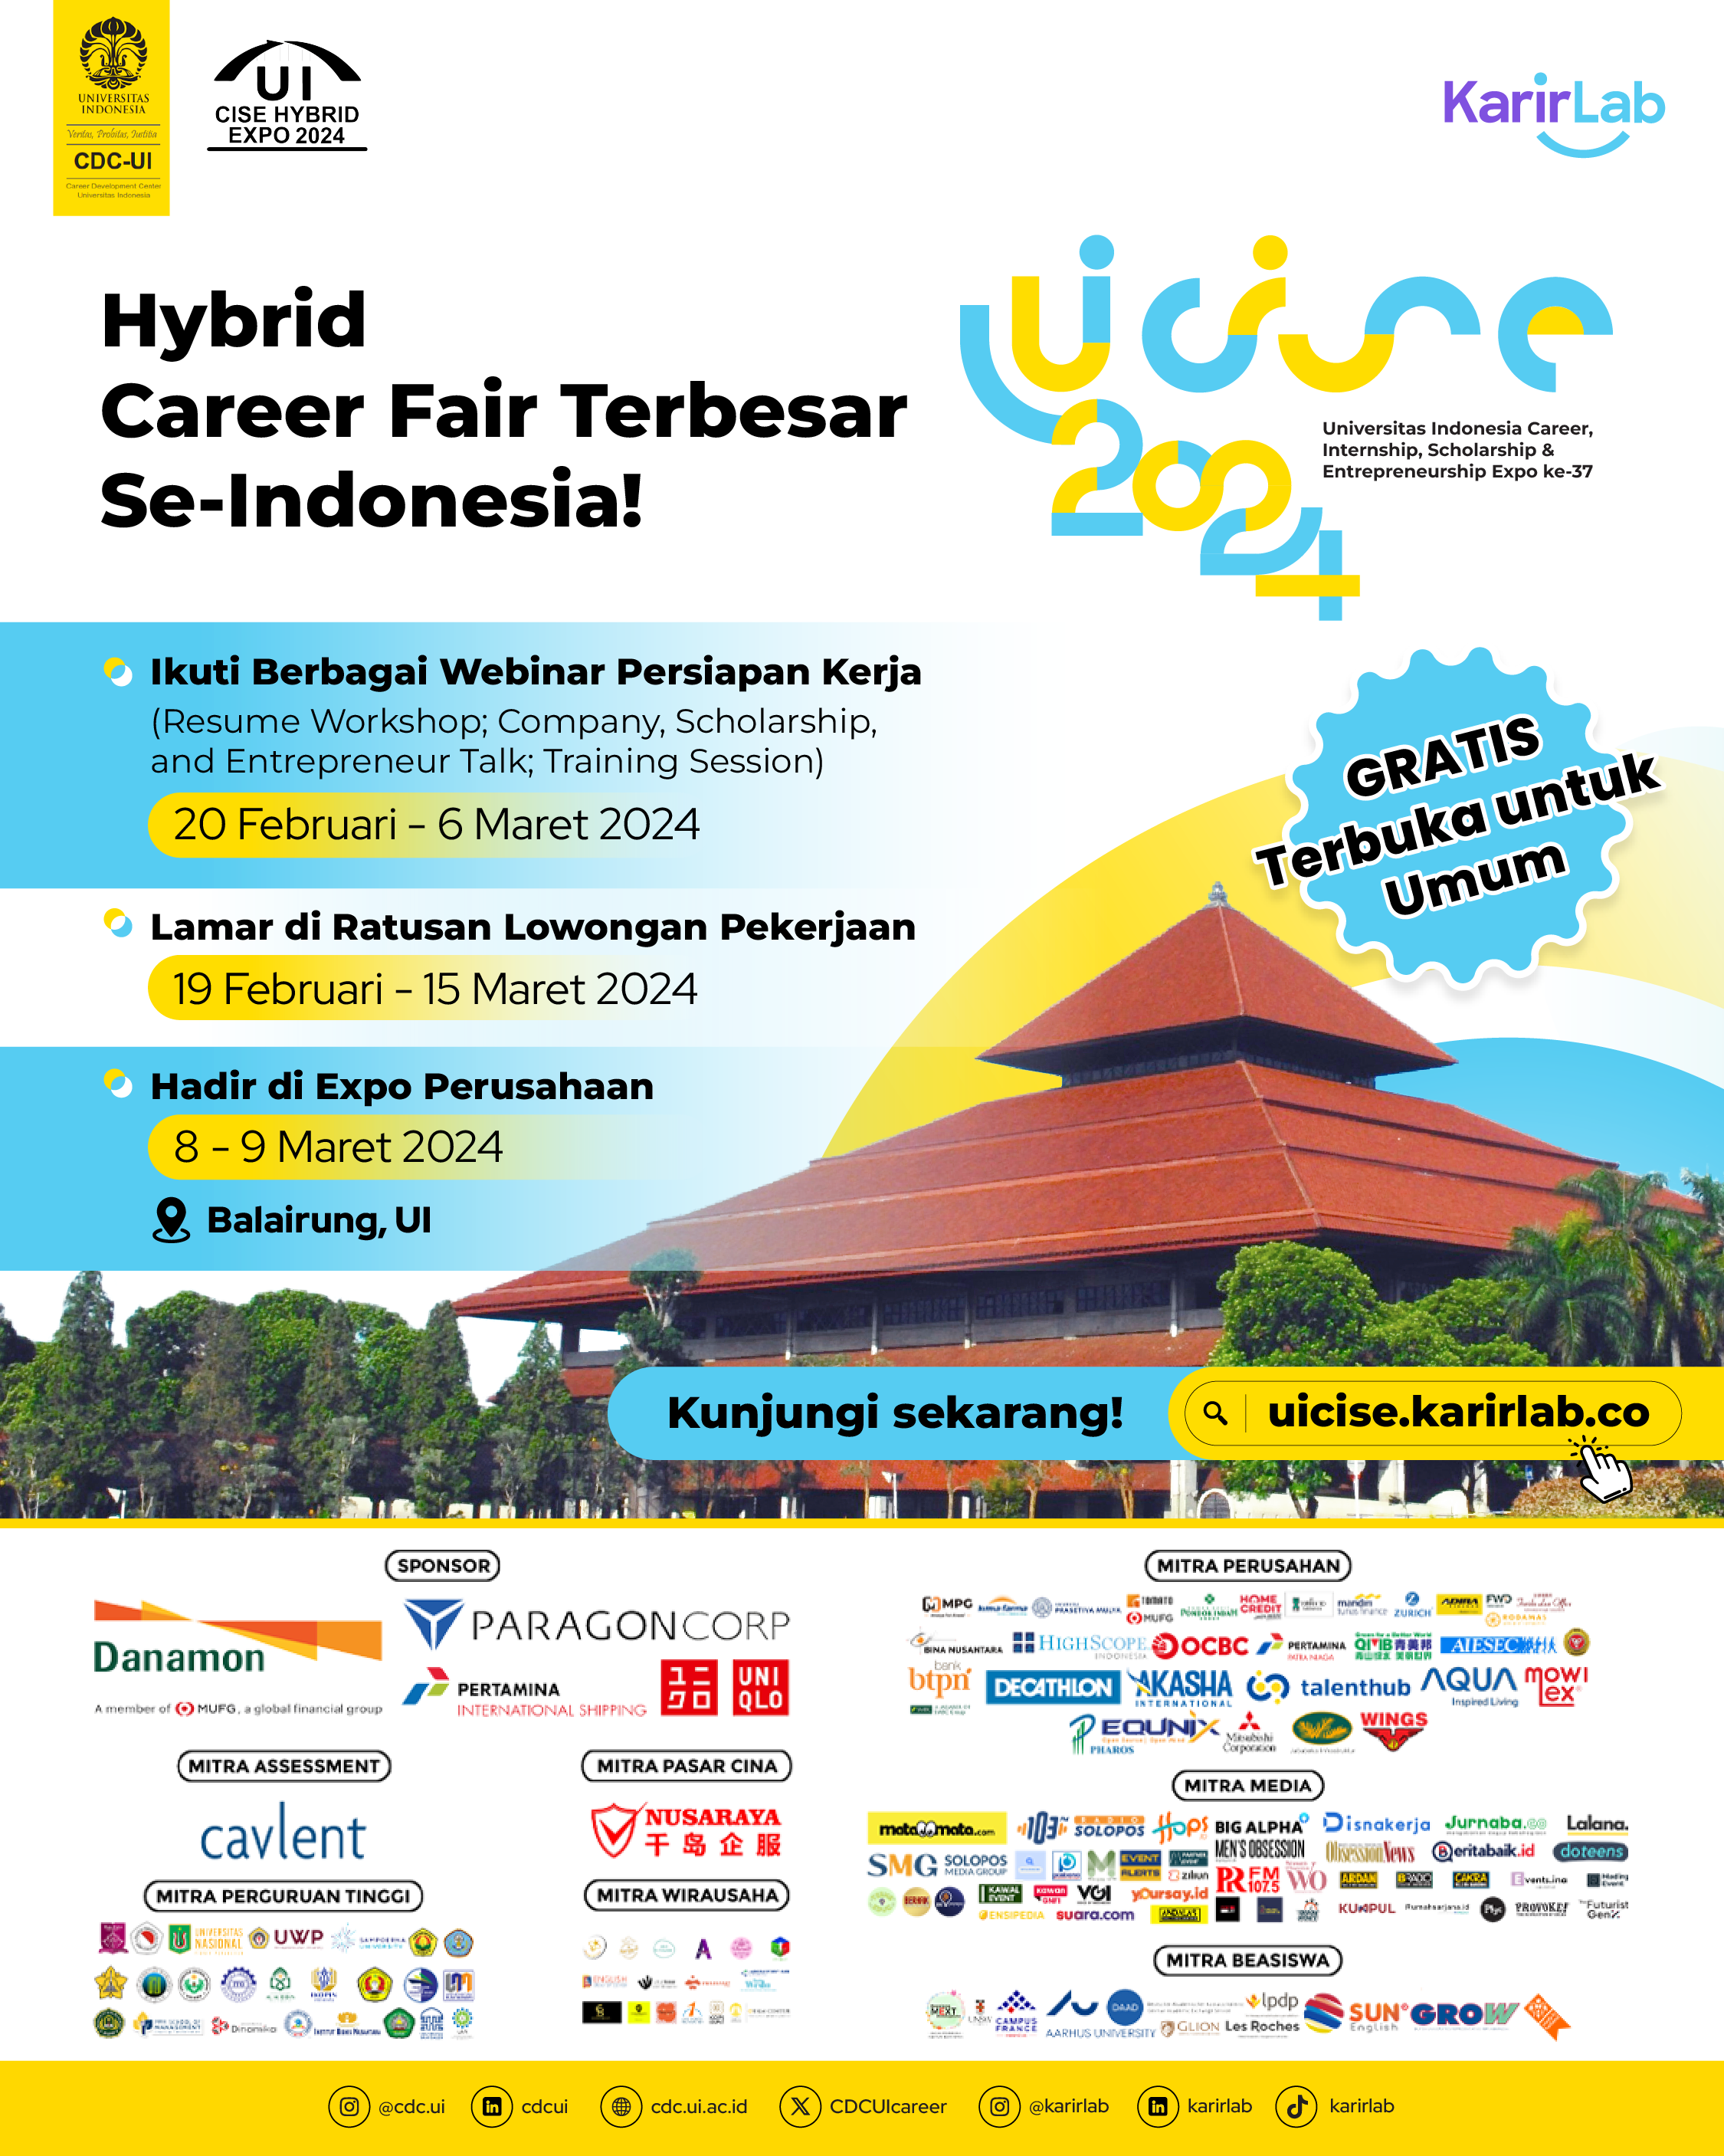 Didukung oleh KarirLab: Hybrid Career Fair Terbesar Universitas Indonesia Career, Internship, Scholarship, dan Entrepreneurship (Ul CISE)